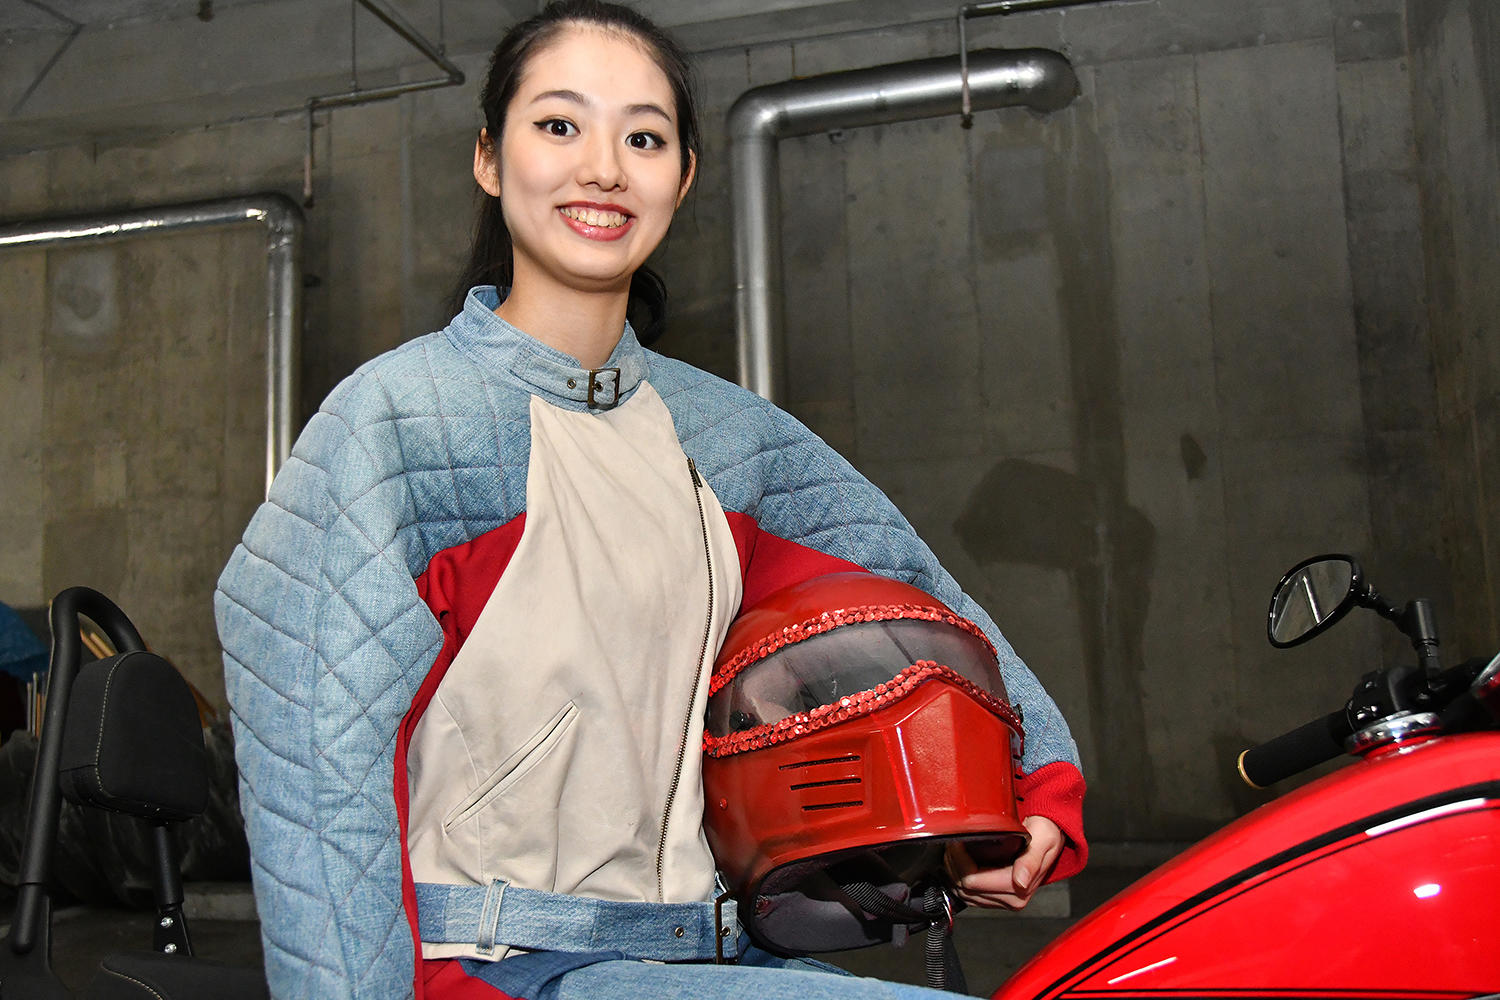 ヘルメットもウェアのスタイルと赤い「<strong>BOLT</strong>」に合わせて平尾さん自身がデザイン<br />
